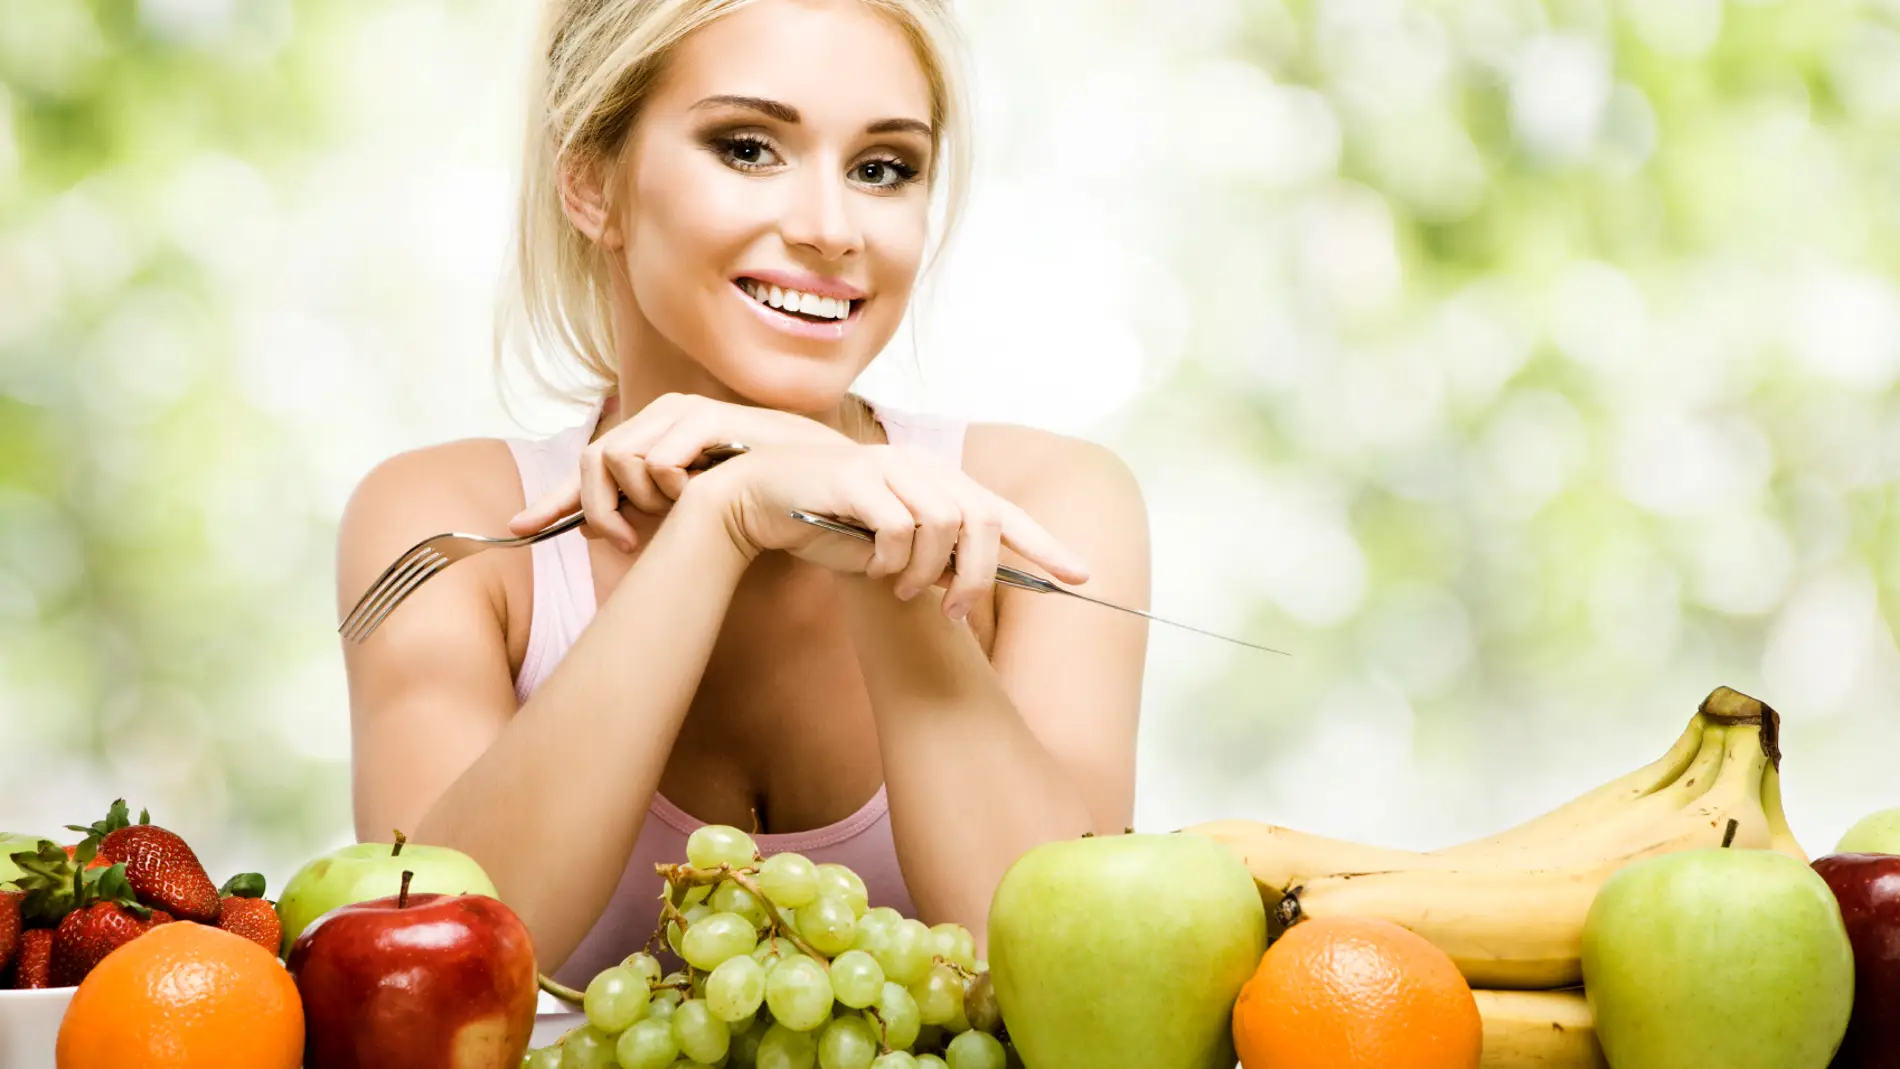 Tomar verduras y frutas mejora la salud.